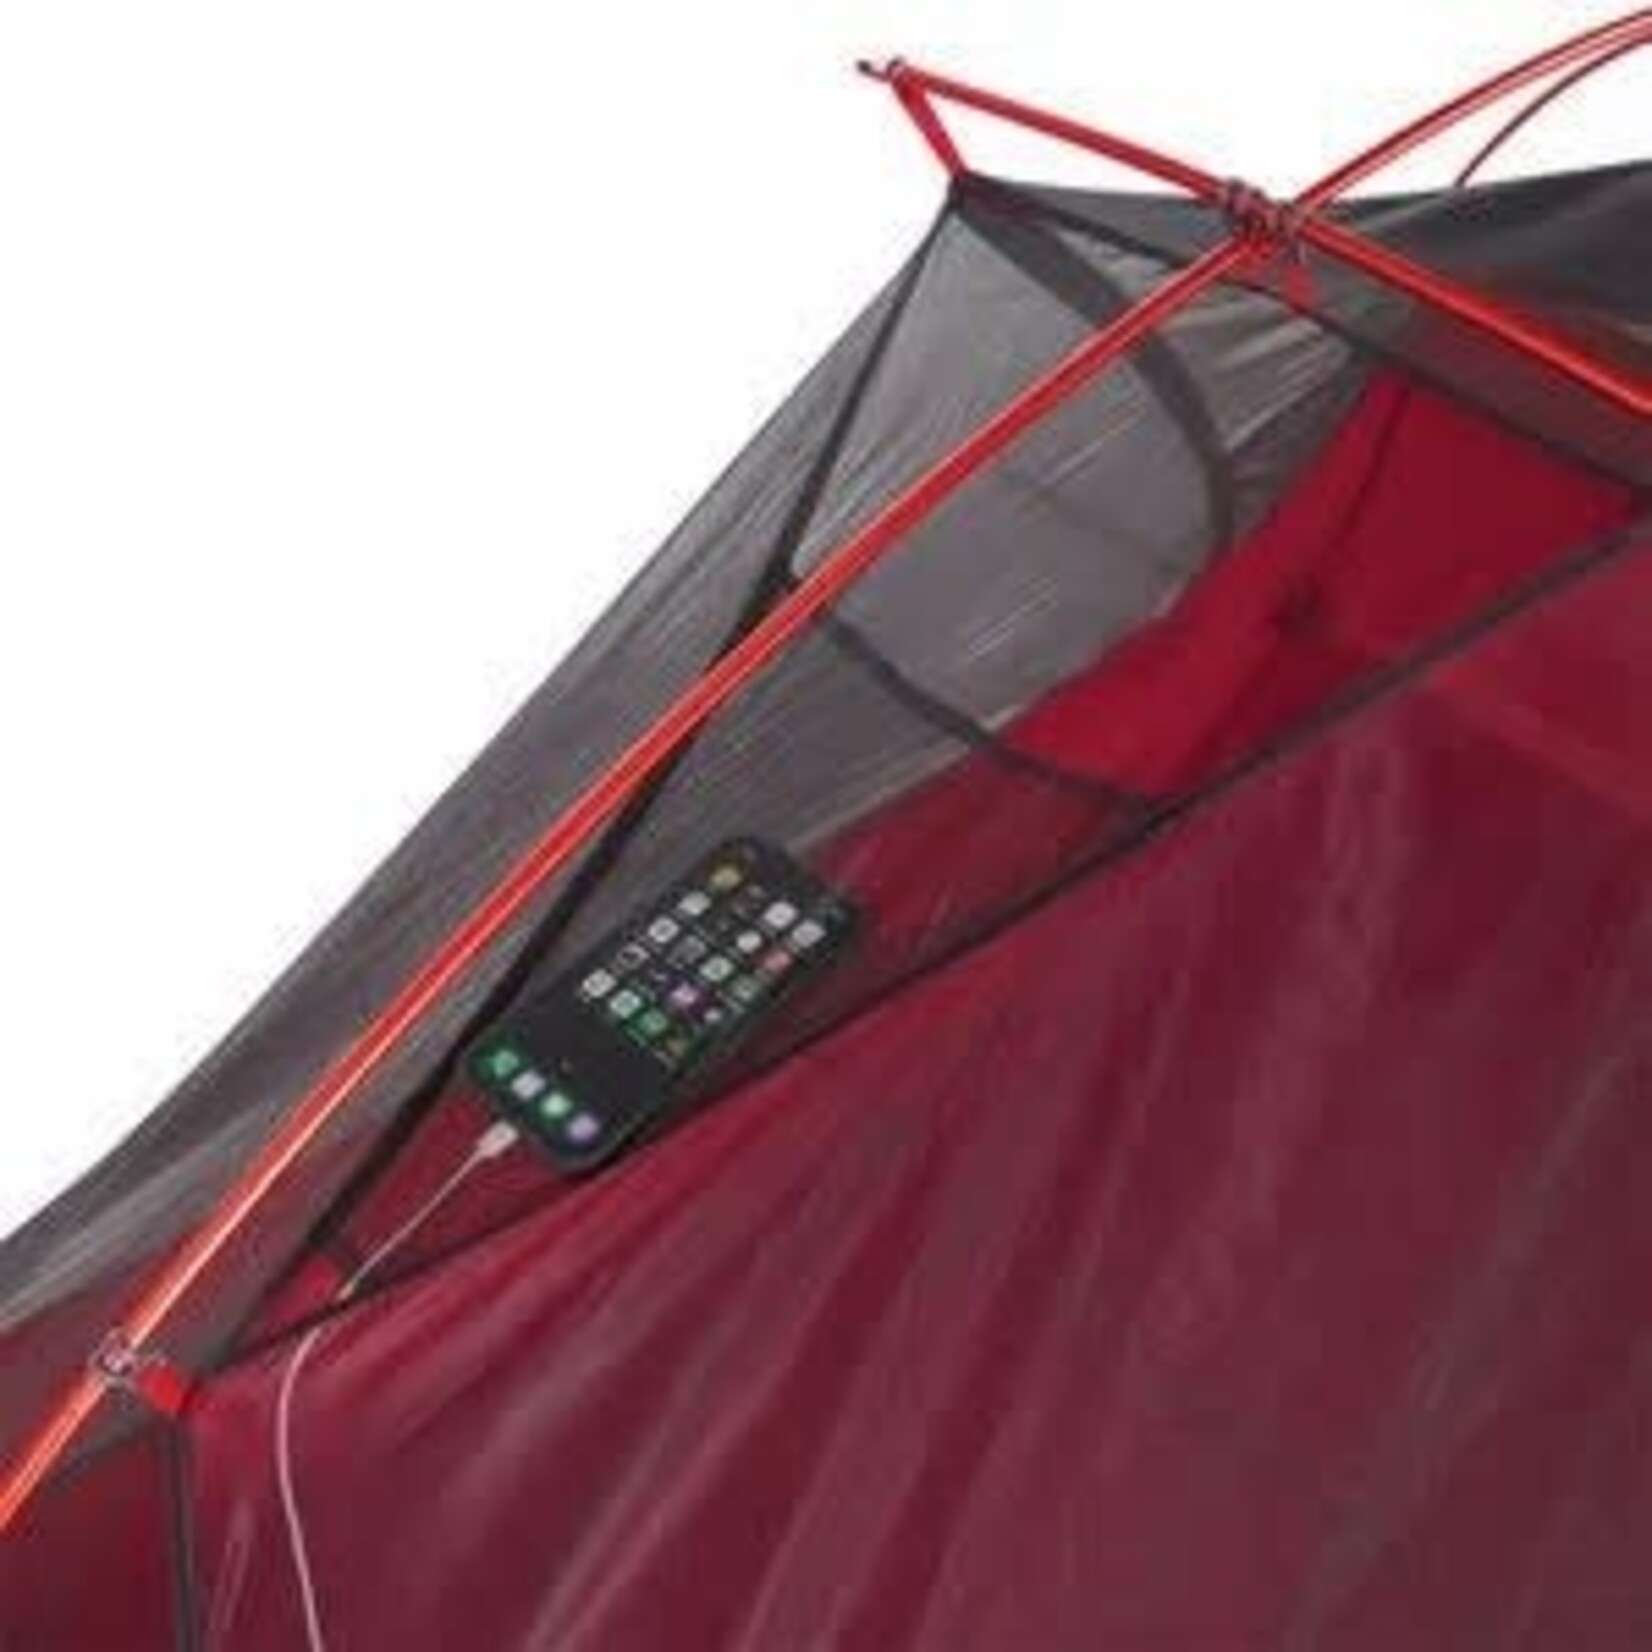 MSR Tente de randonnée ultralégère autoportante pour 2 personnes FreeLite  2 tent 2 V3